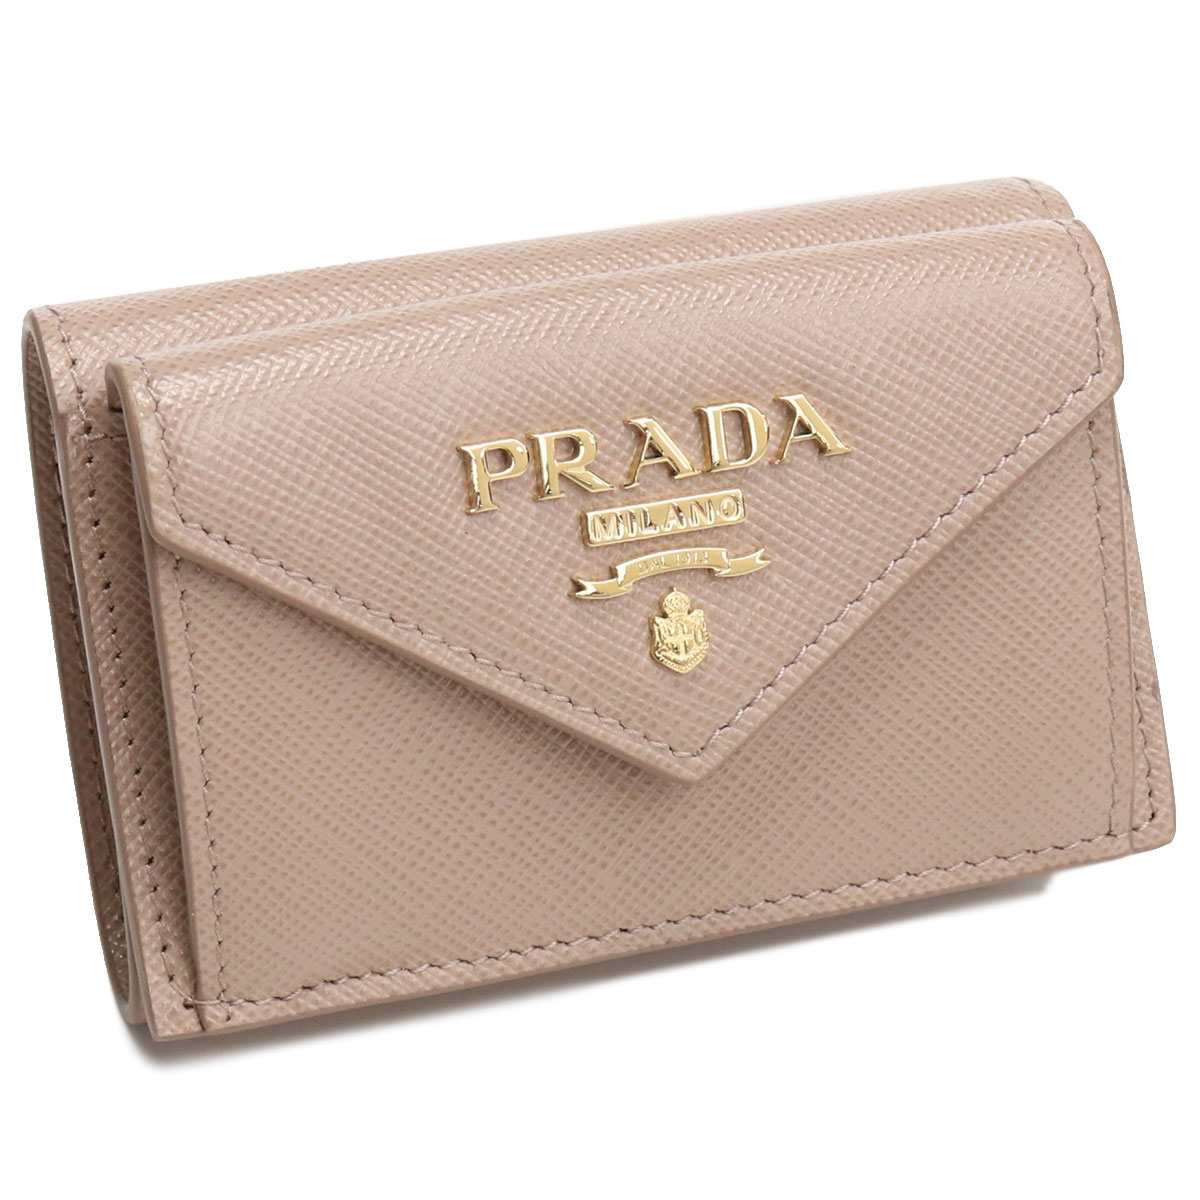 プラダ PRADA 1MH021 三つ折り財布 CIPRIA ベージュ系 レディース bh